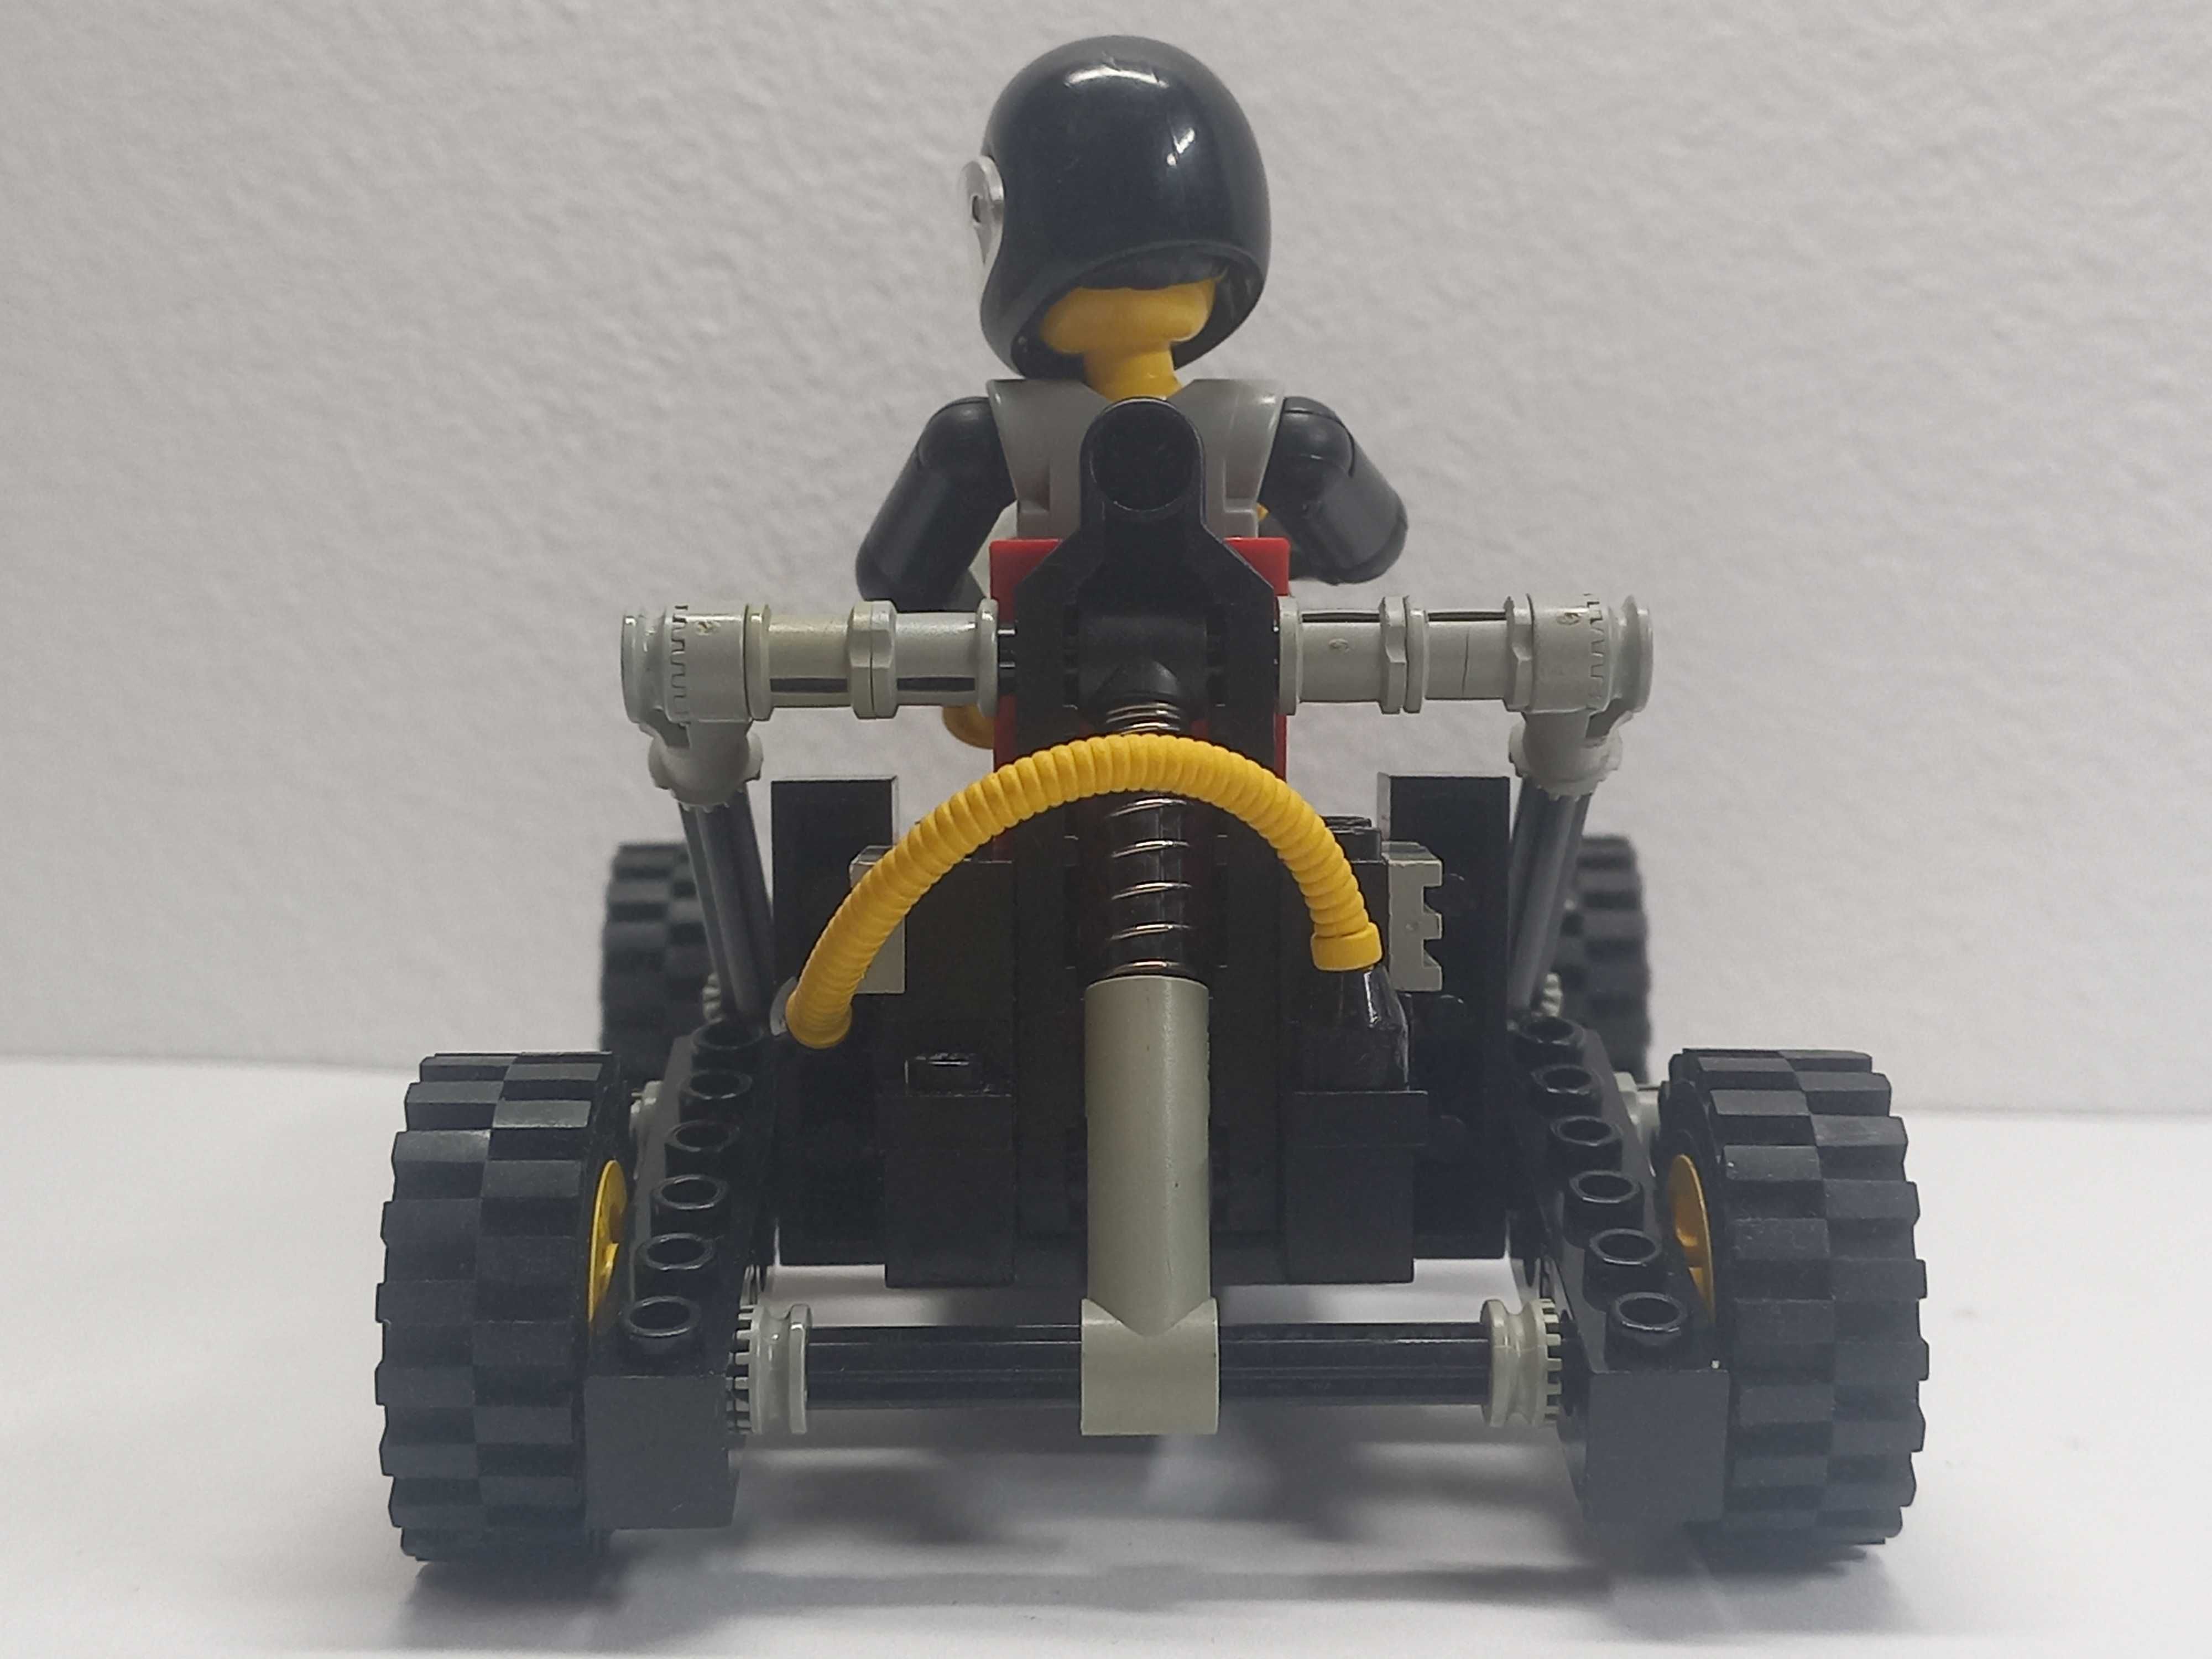 LEGO Technic Roadster 8832